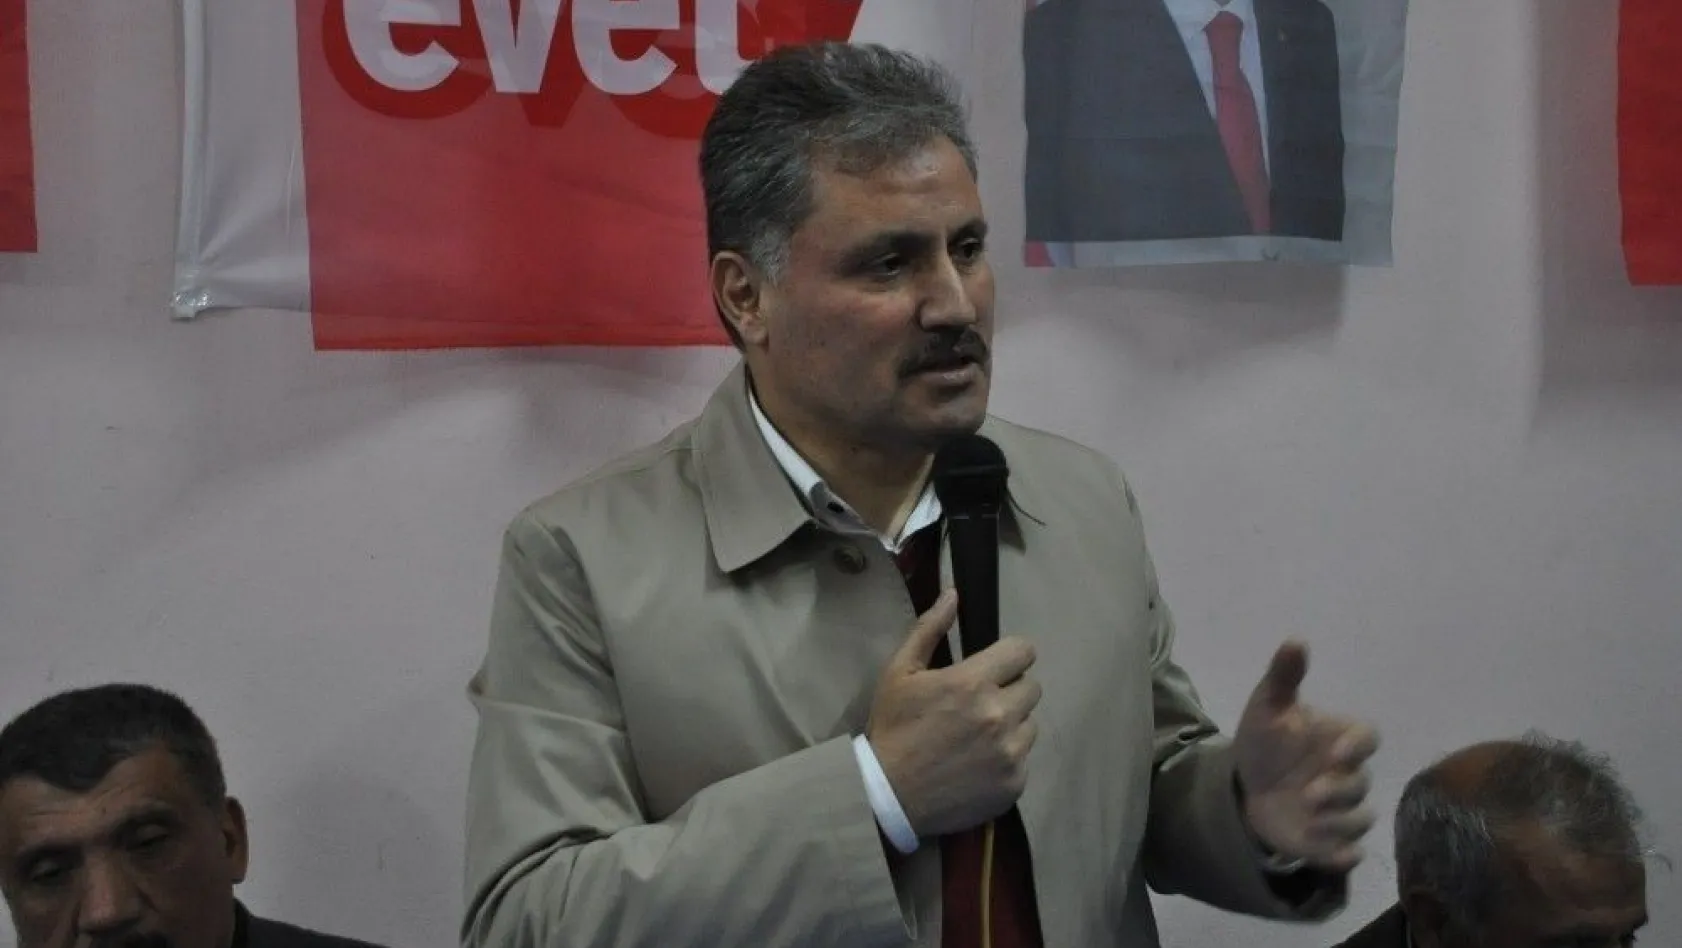 Malatya Büyükşehir Belediye Başkanı Ahmet Çakır:
